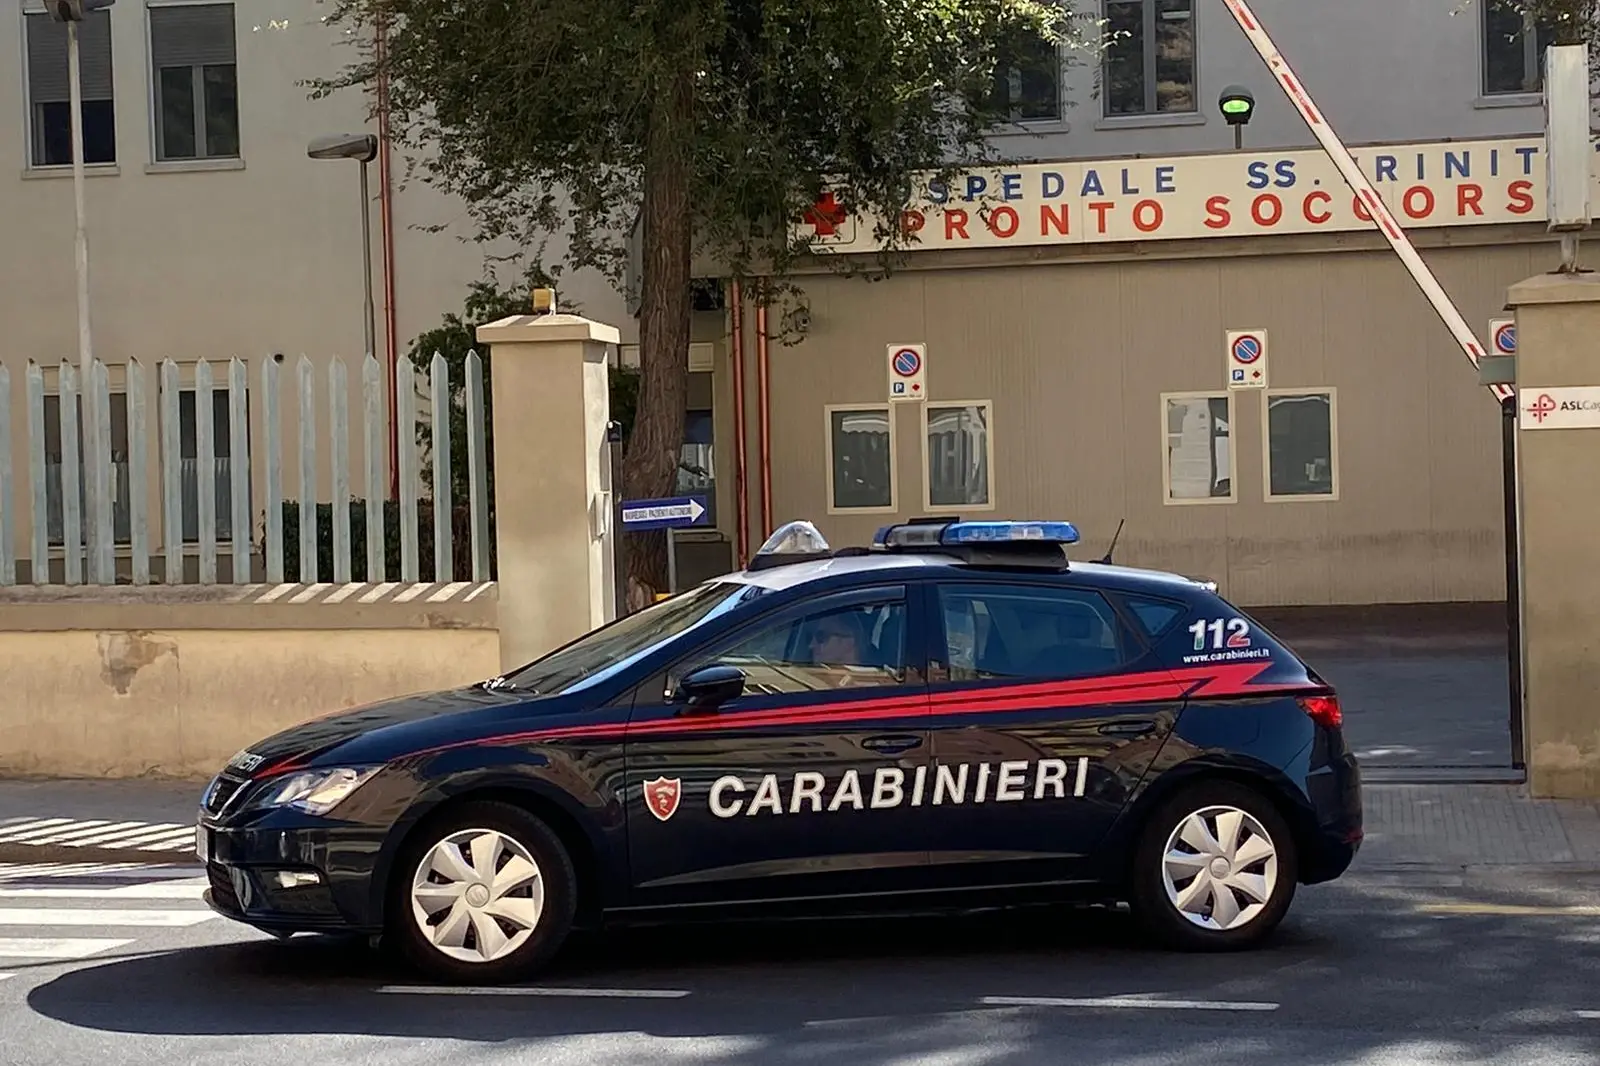 Una pattuglia dei carabinieri davanti al pronto soccorso del Santissima Trinità